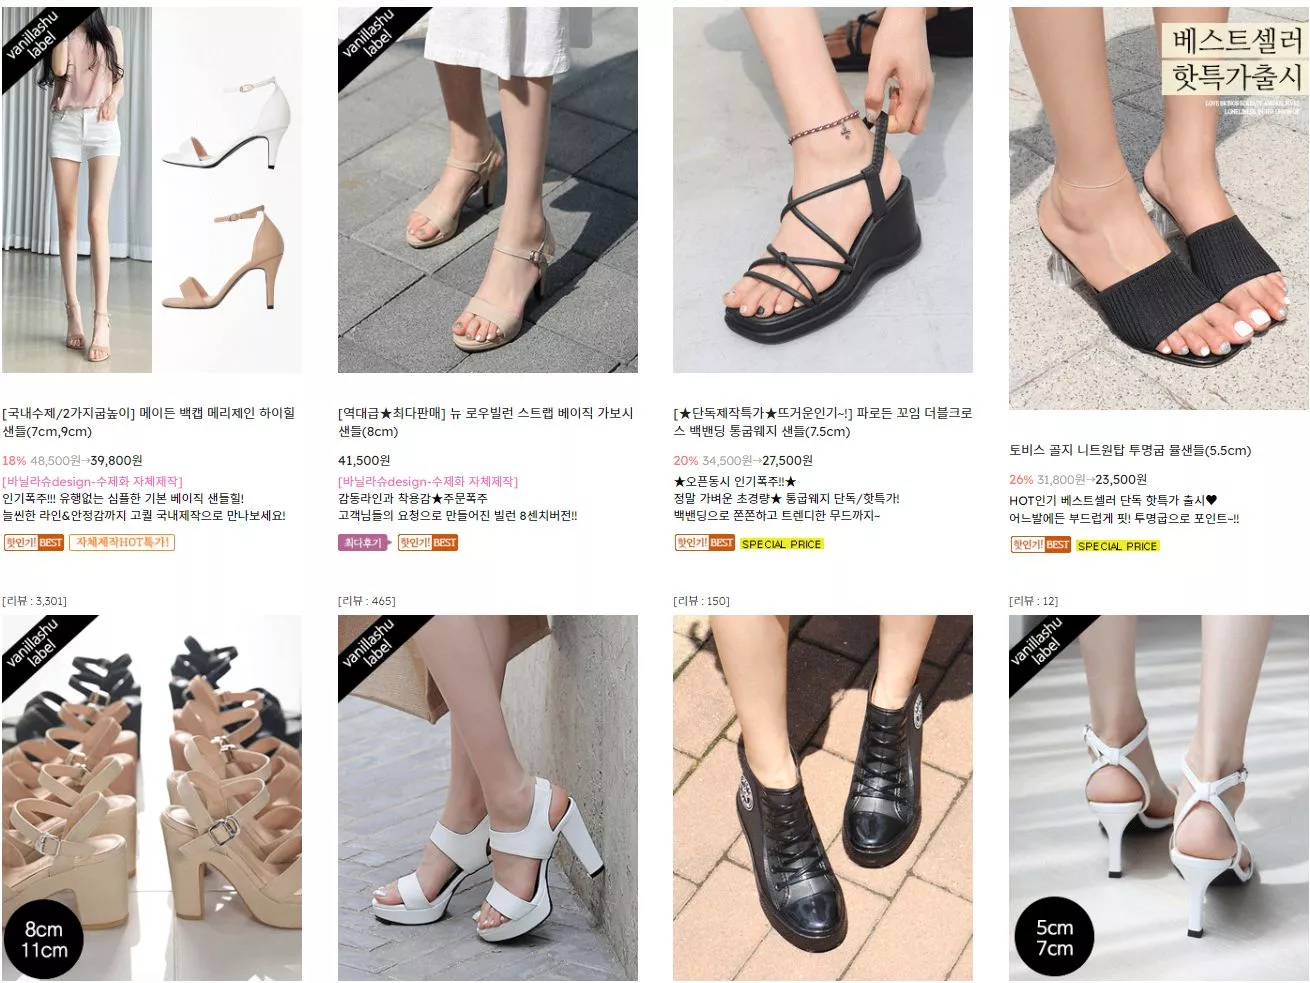 корейские бренды обуви